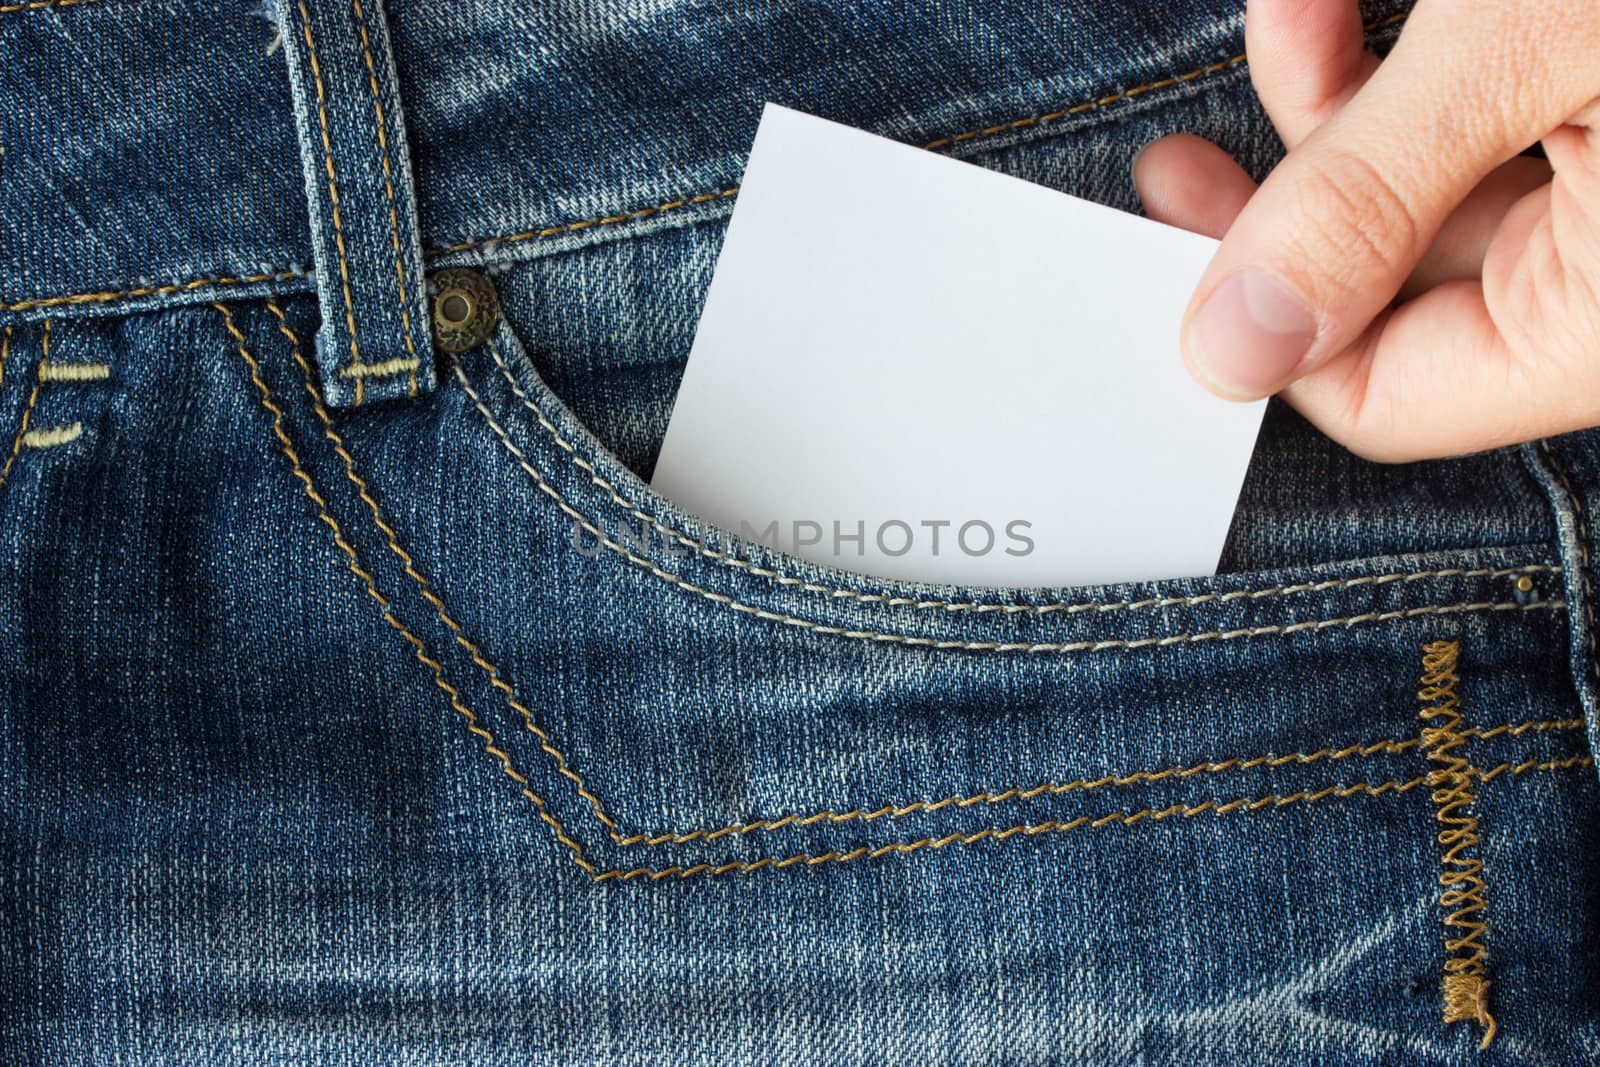 paper in blue jeans pocket by liwei12